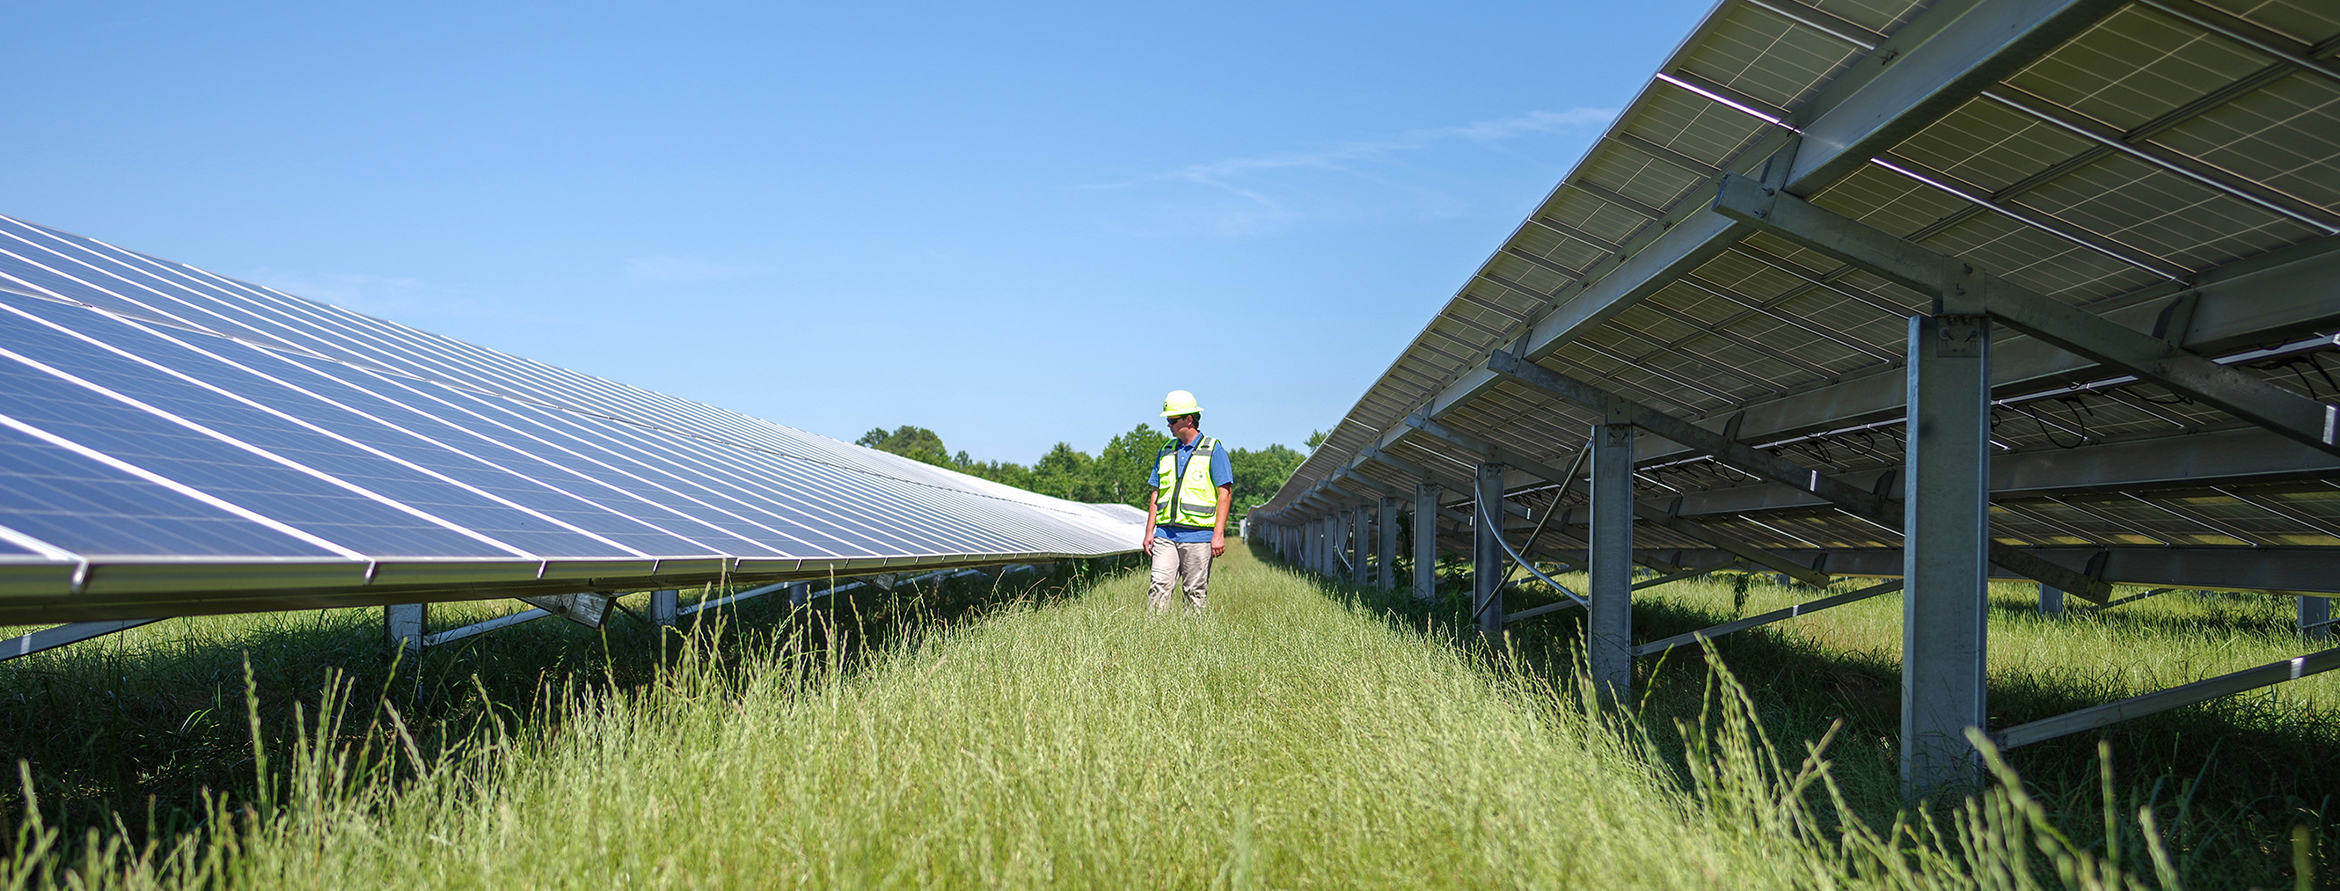 CCR-Solar-Farm-Technician-H.jpg